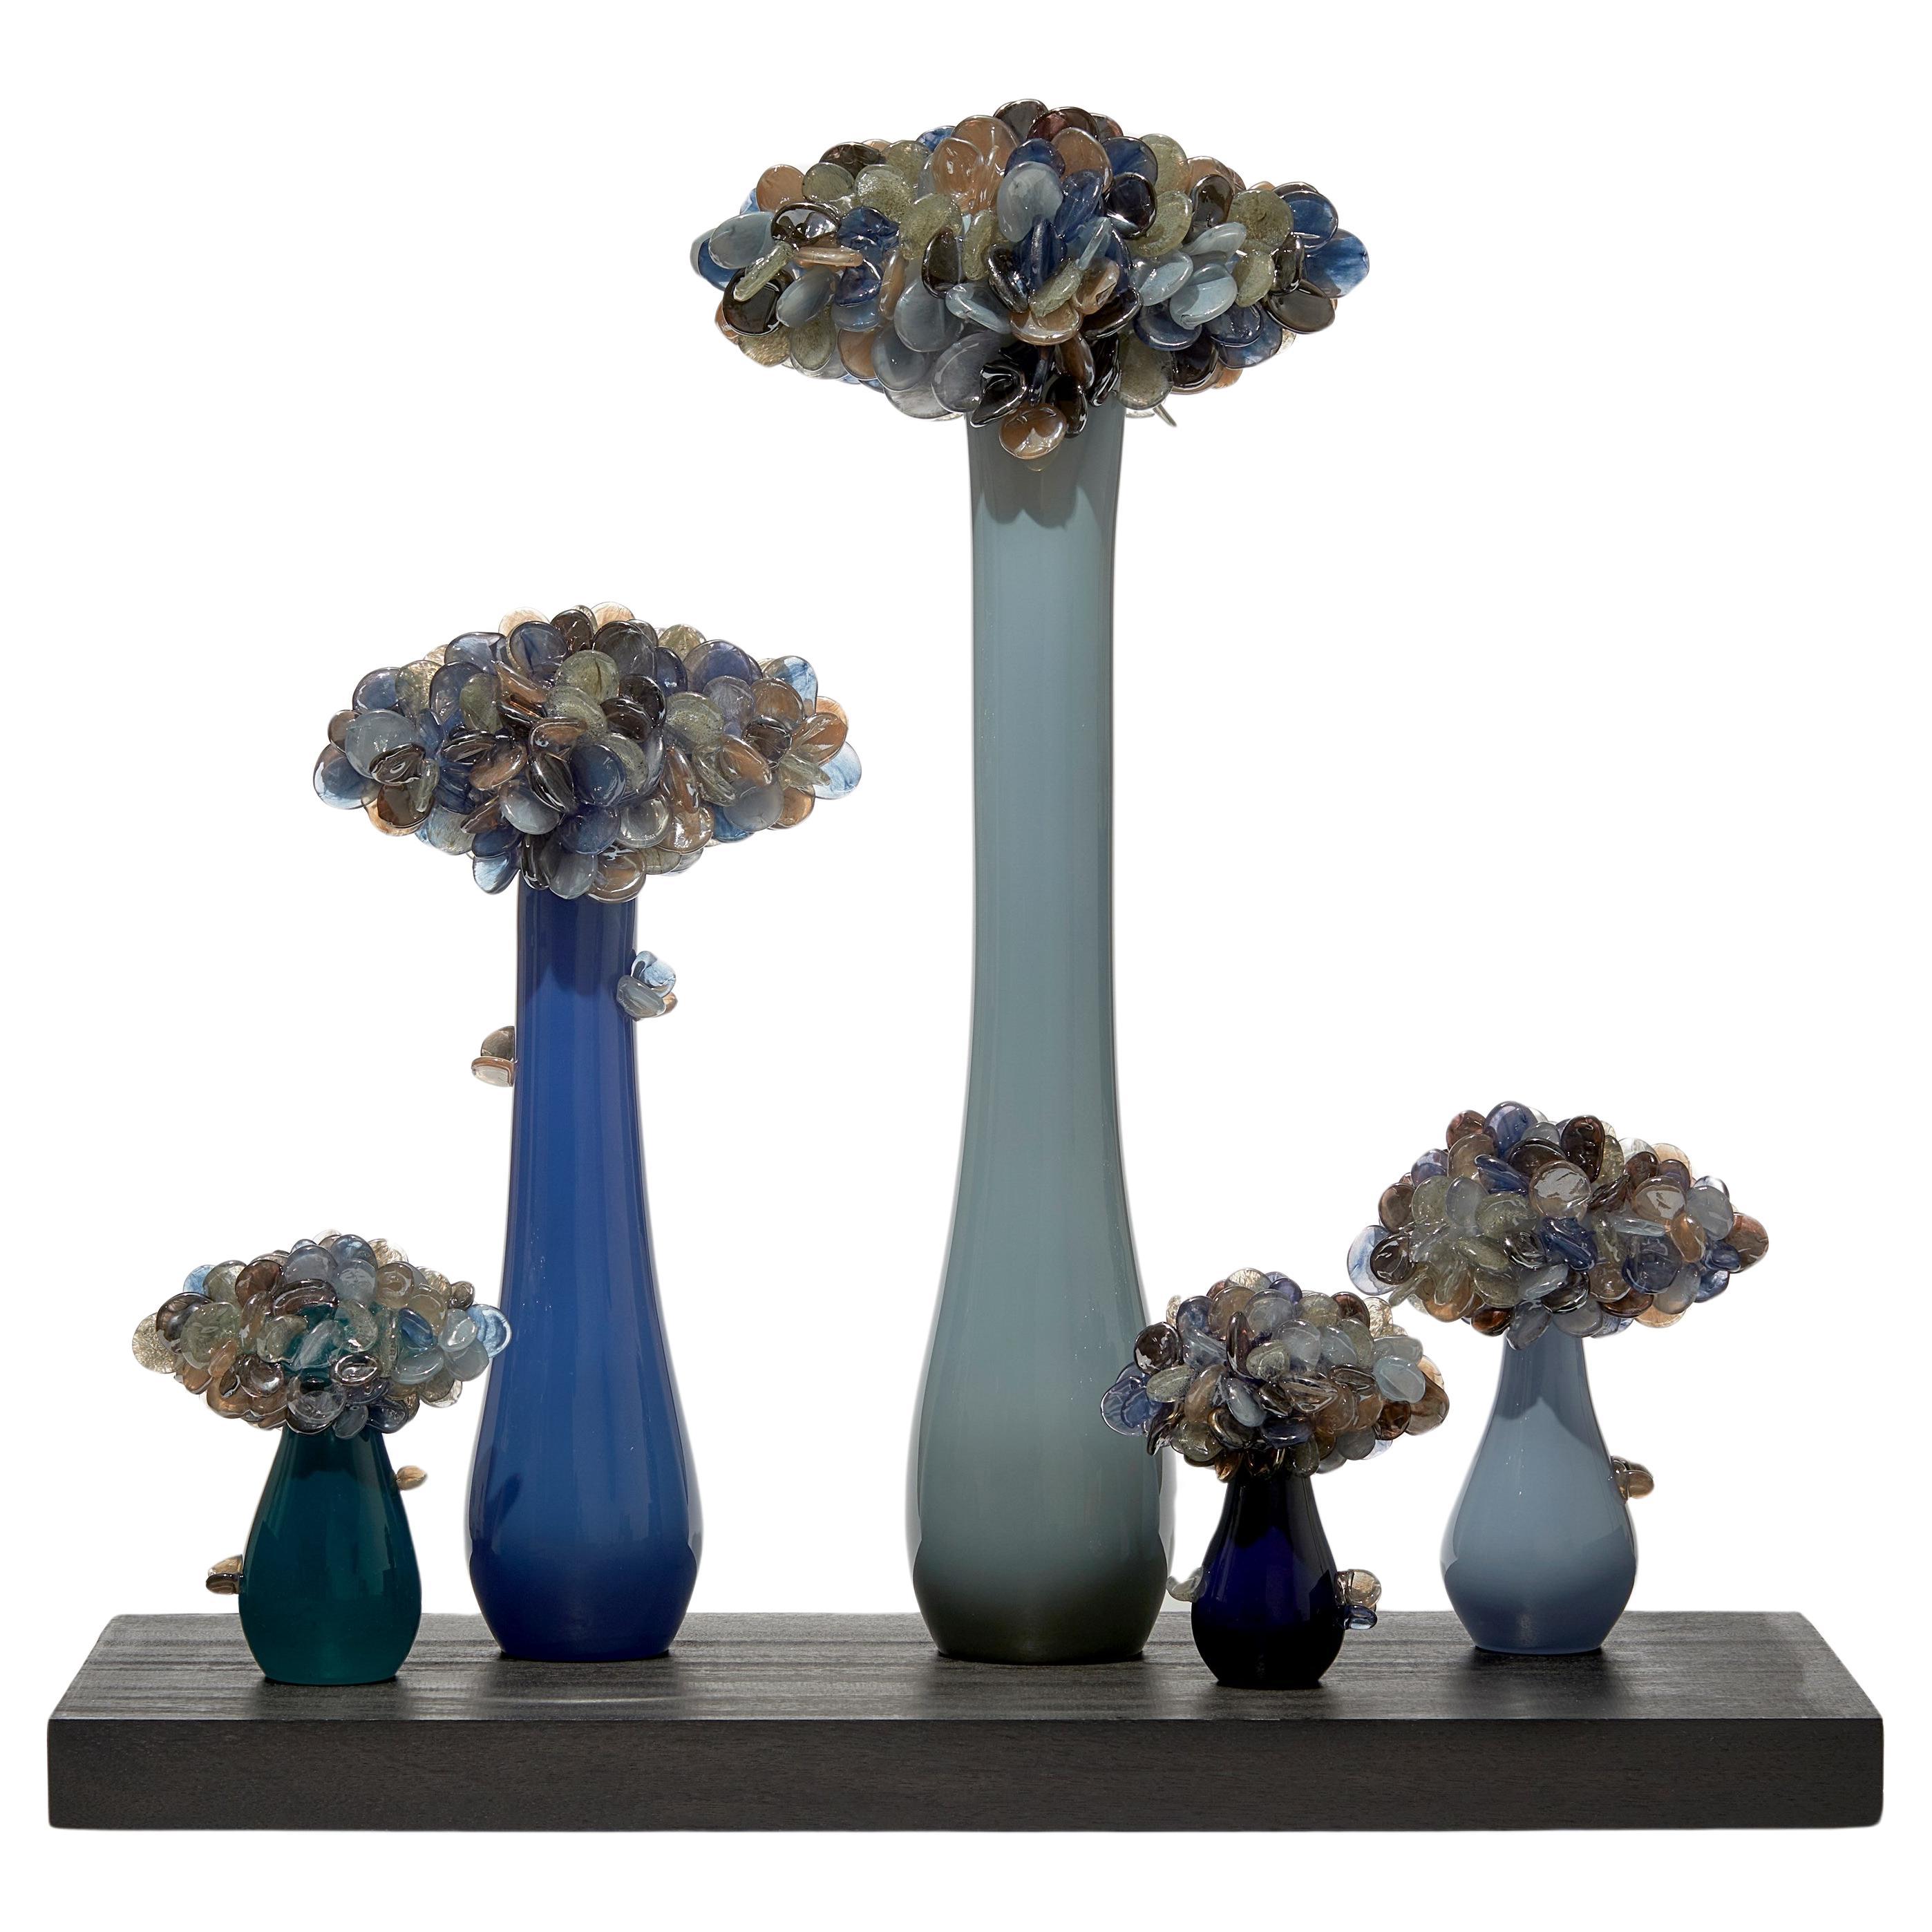 Enchanted Mori Dusk, ein von Baum und bonsai inspiriertes Glaskunstwerk von Louis Thompson